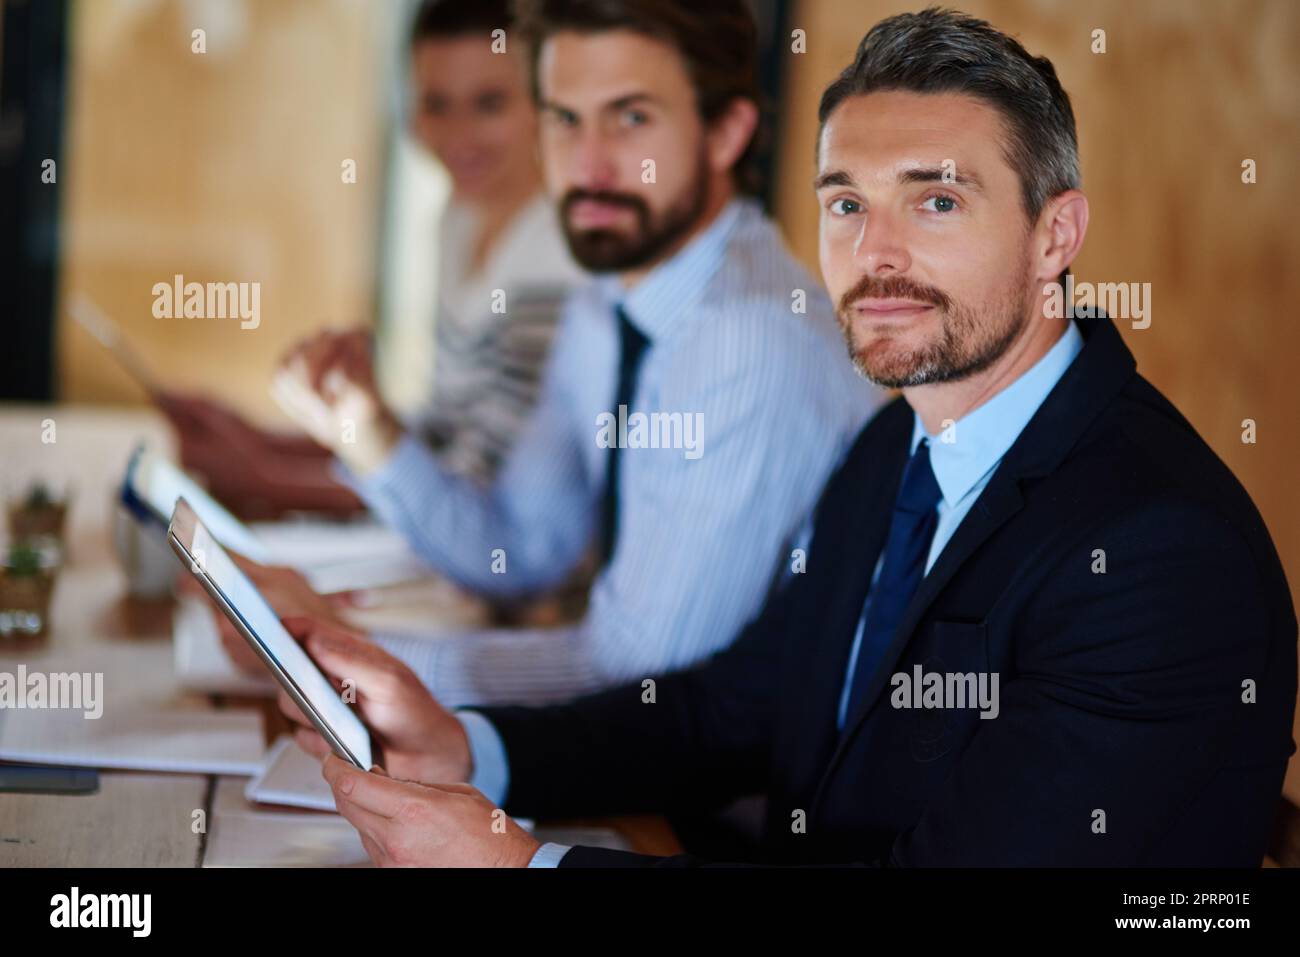 Wir halten unsere Fähigkeiten auf dem neuesten Stand. Porträt eines Geschäftsmannes, der während einer Konferenz ein digitales Tablet verwendet. Stockfoto